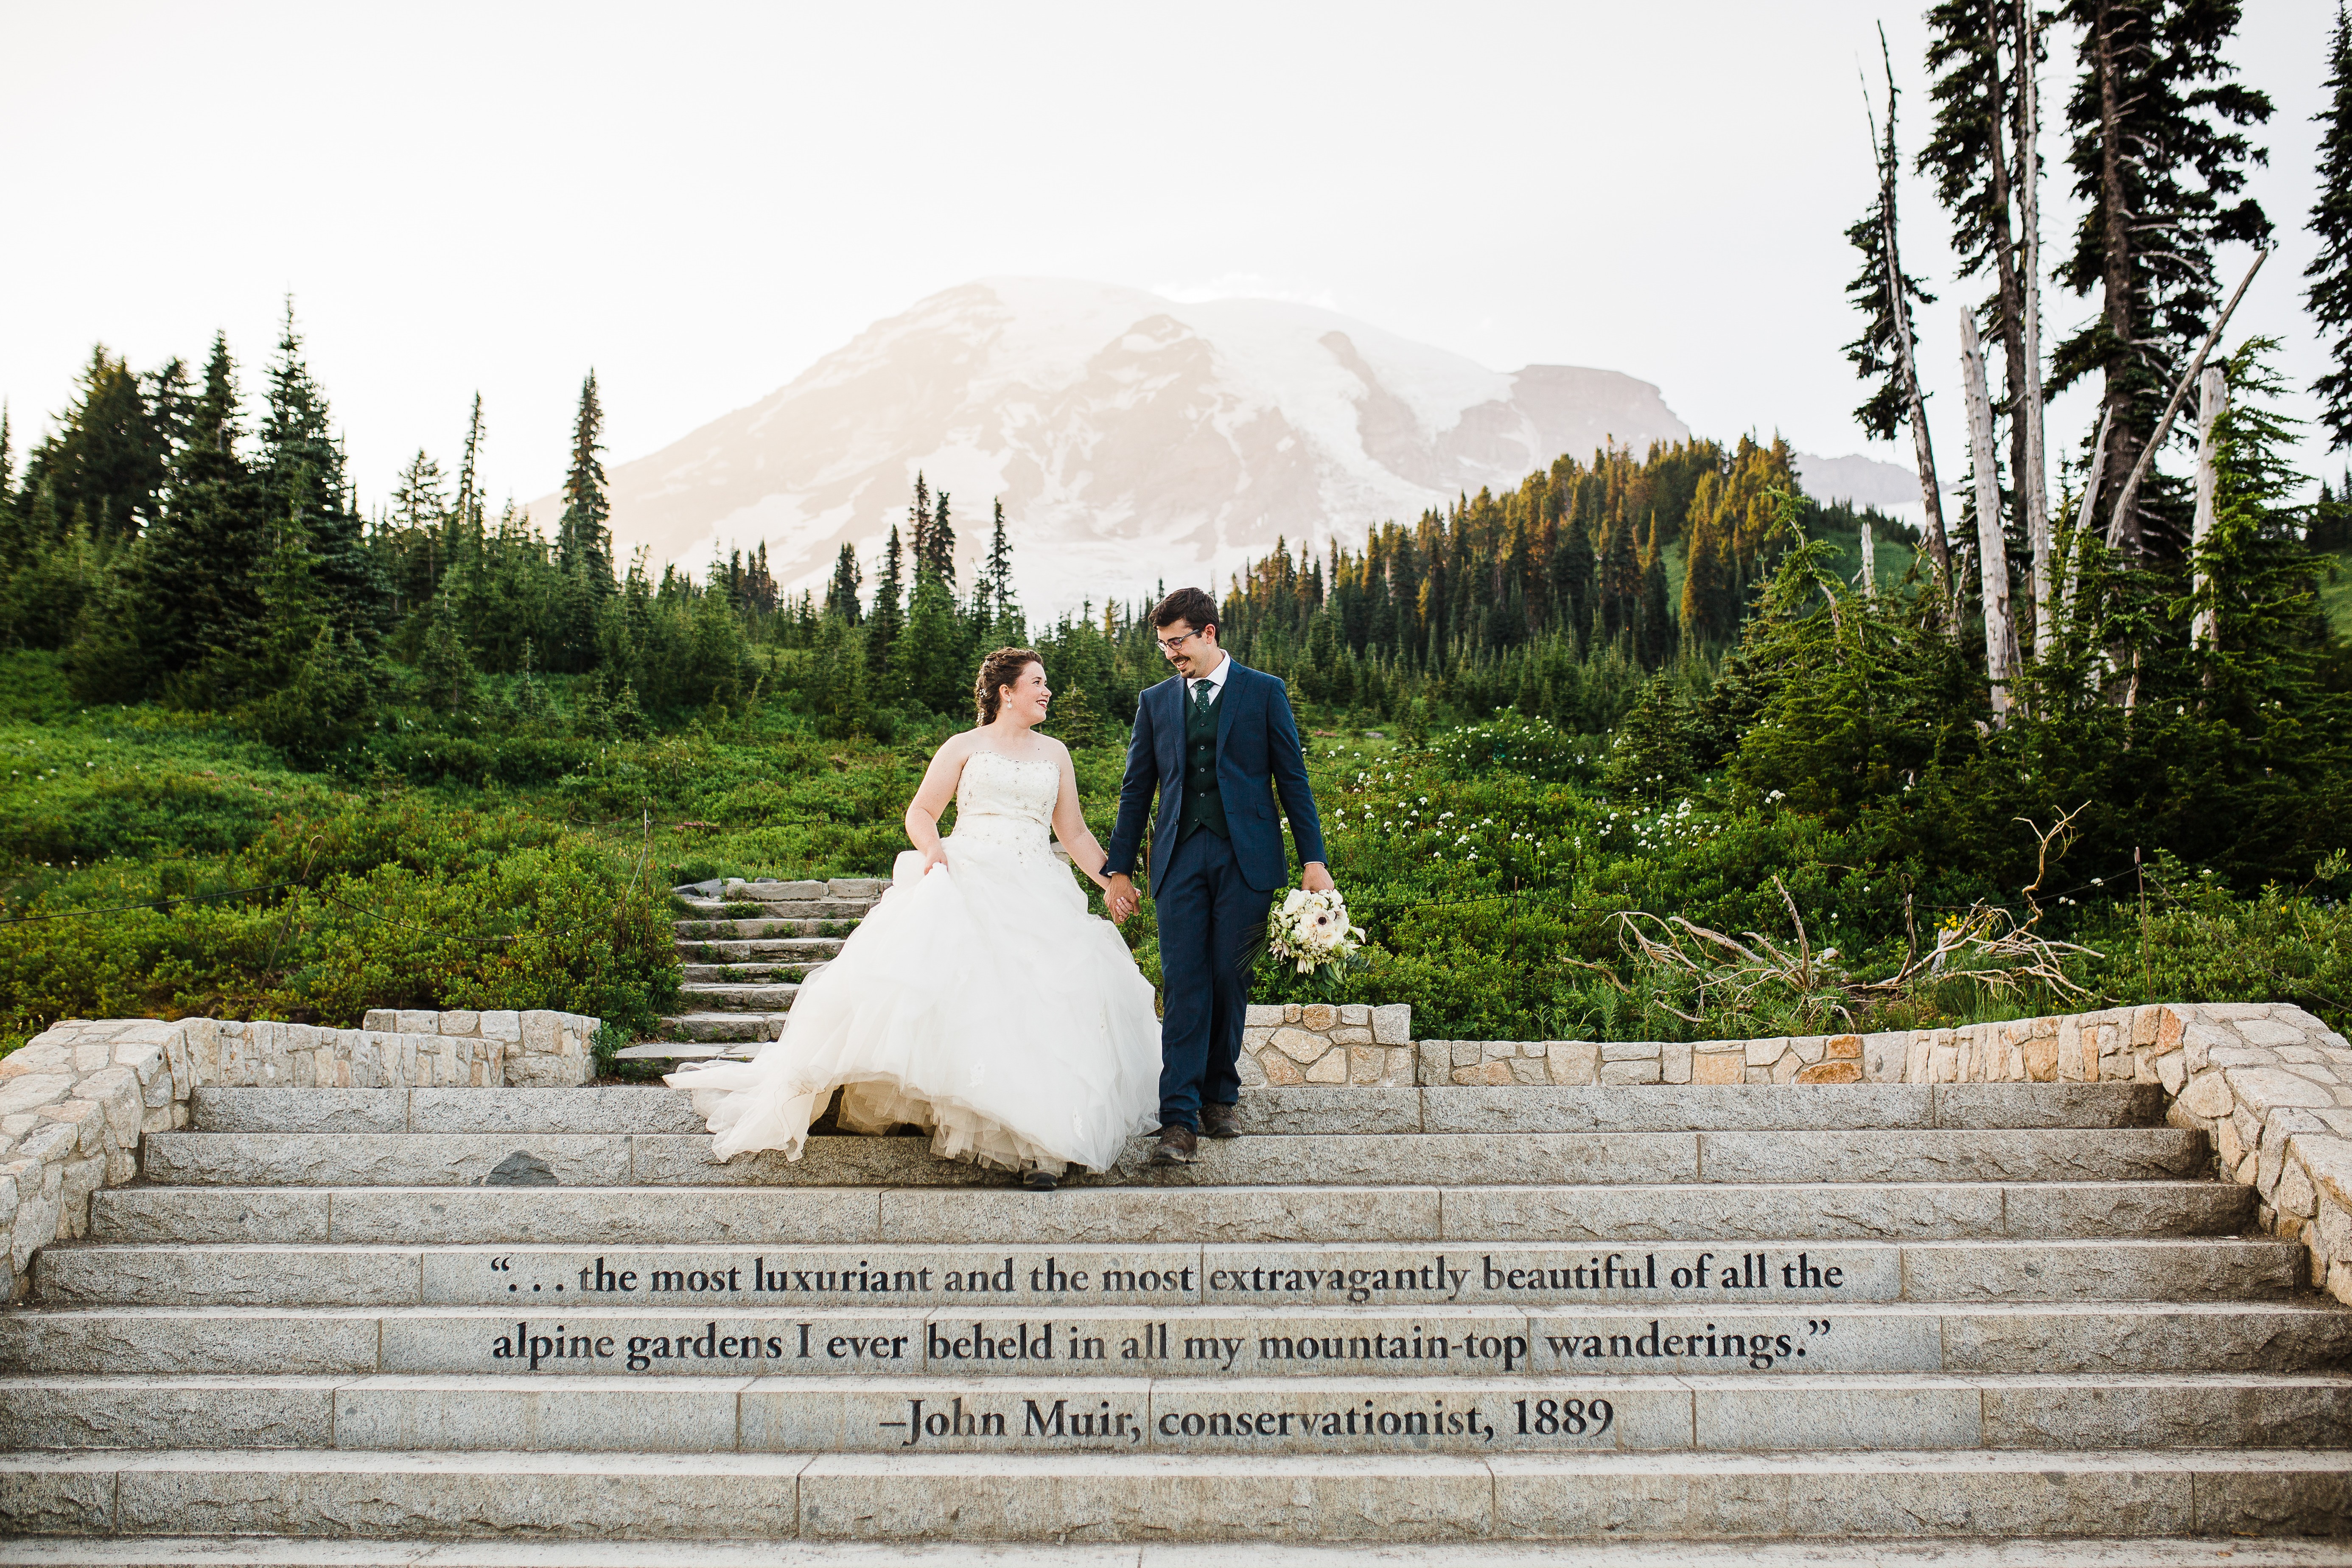 09_Mt-Rainier-Paradise-Adventure-Wedding-National-Park-Elopement-Photographer-12